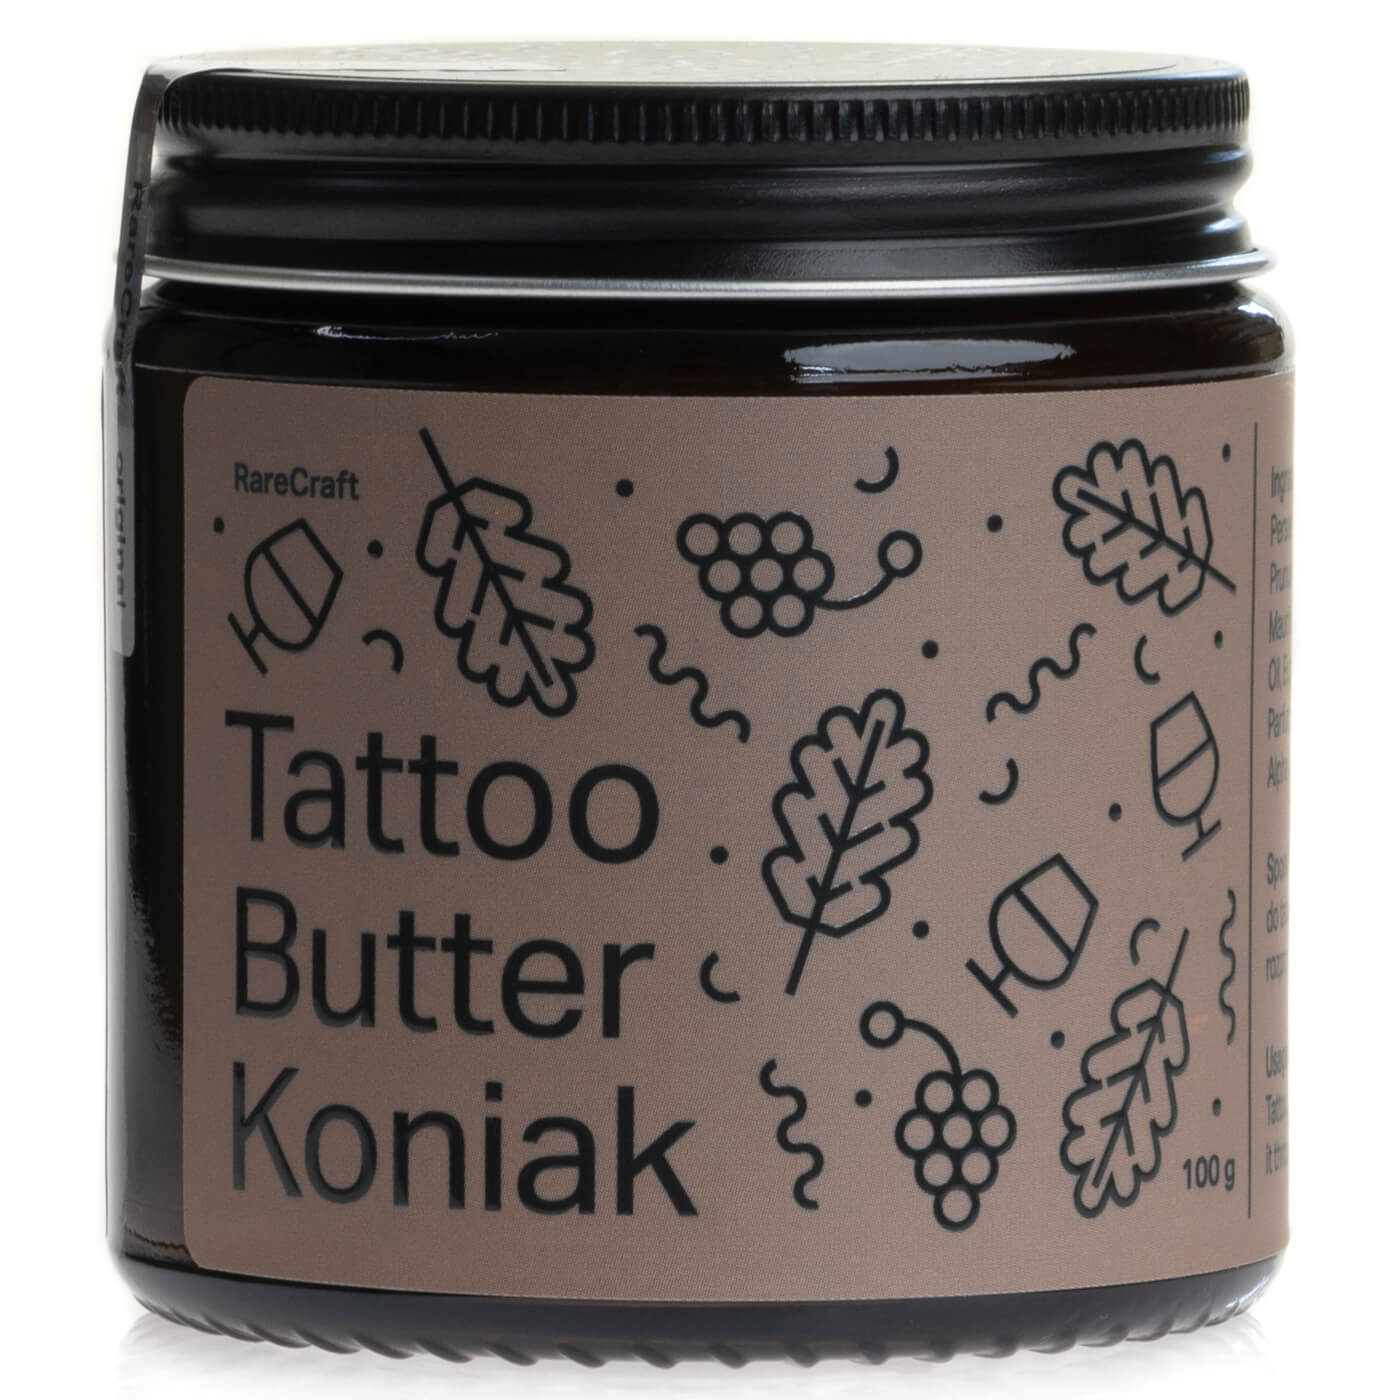 RareCraft Koniak, Tattoo Butter